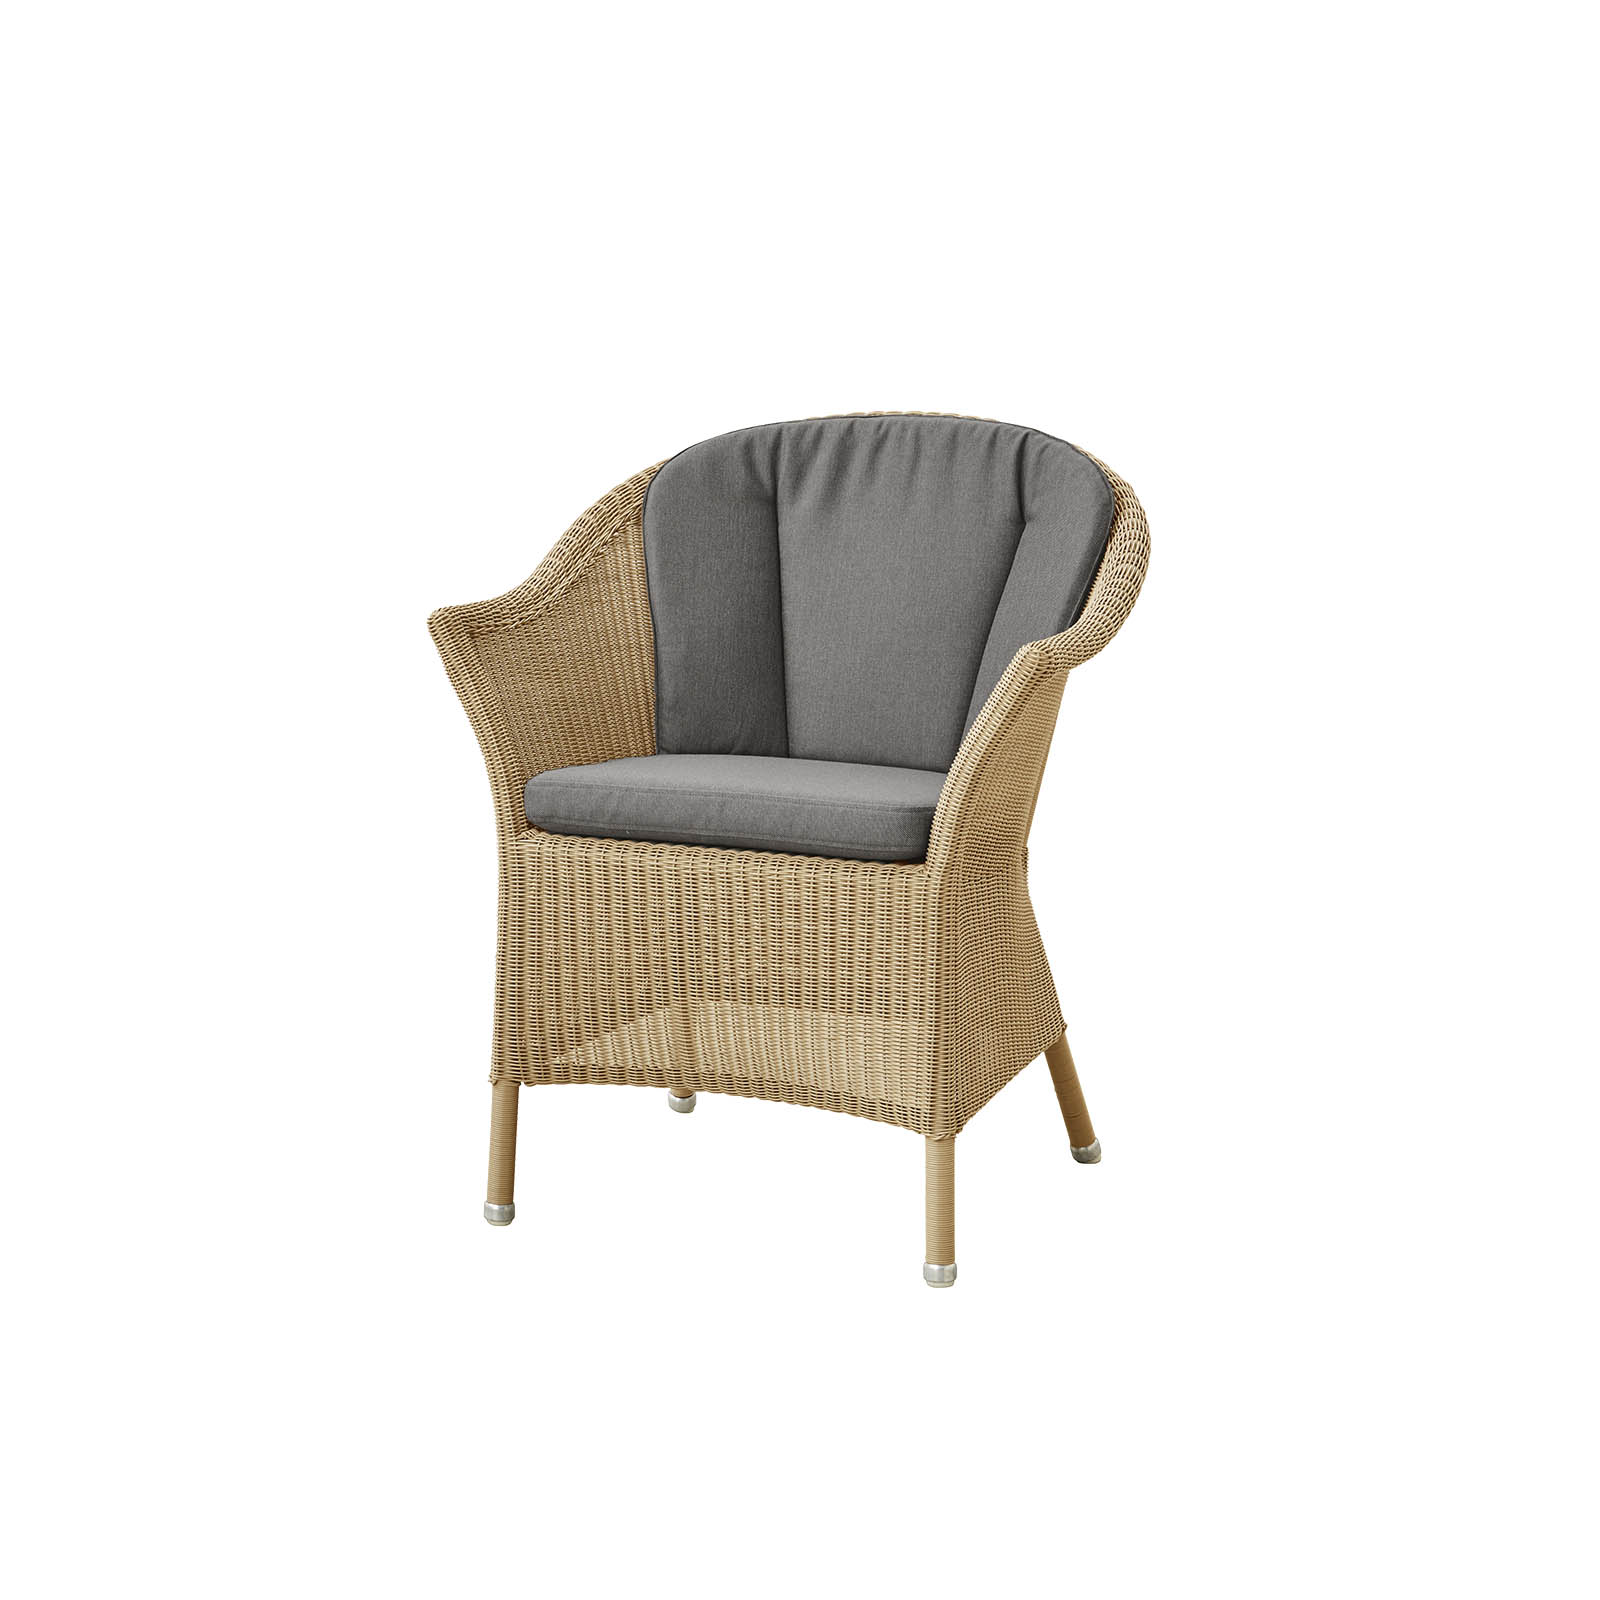 Lansing Stuhl aus Cane-line Weave in Natural mit Kissen aus Cane-line Natté in Taupe und Kissen aus Cane-line Natté in Taupe